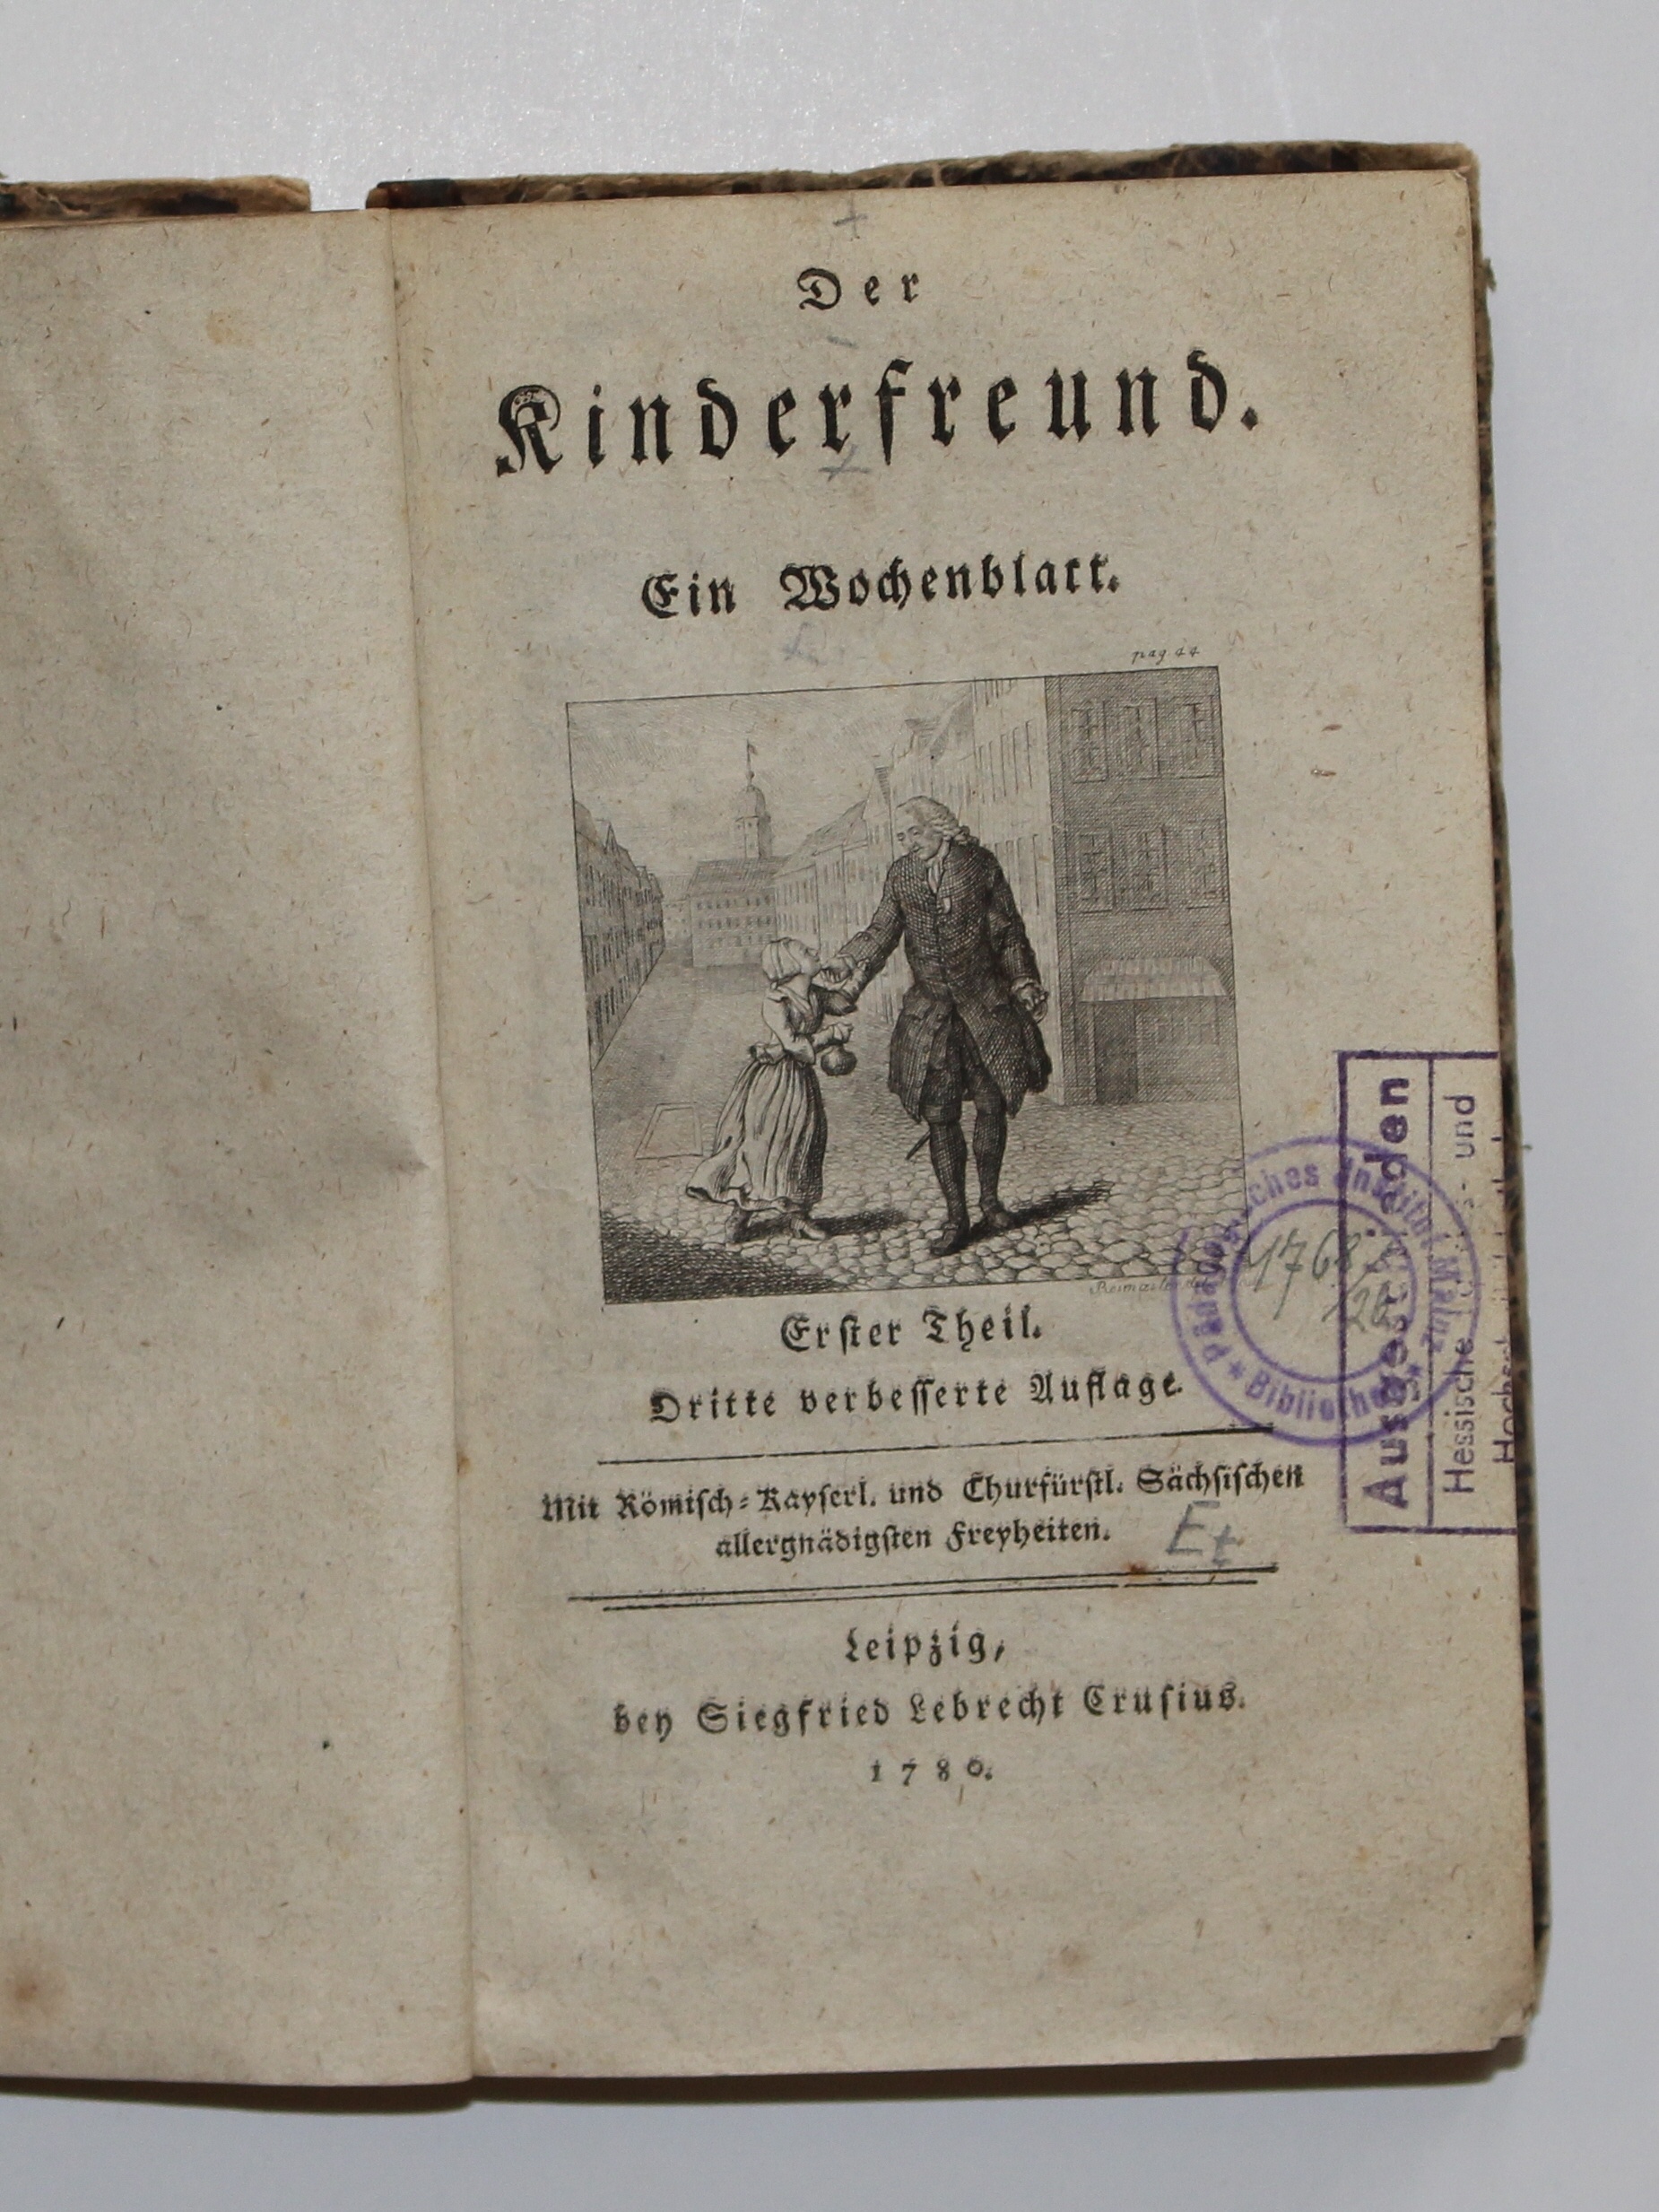 Der Kinderfreund. Ein Wochenblatt. Erster Theil. Leipzig, 1780 (Reckahner Museen CC BY-NC-SA)